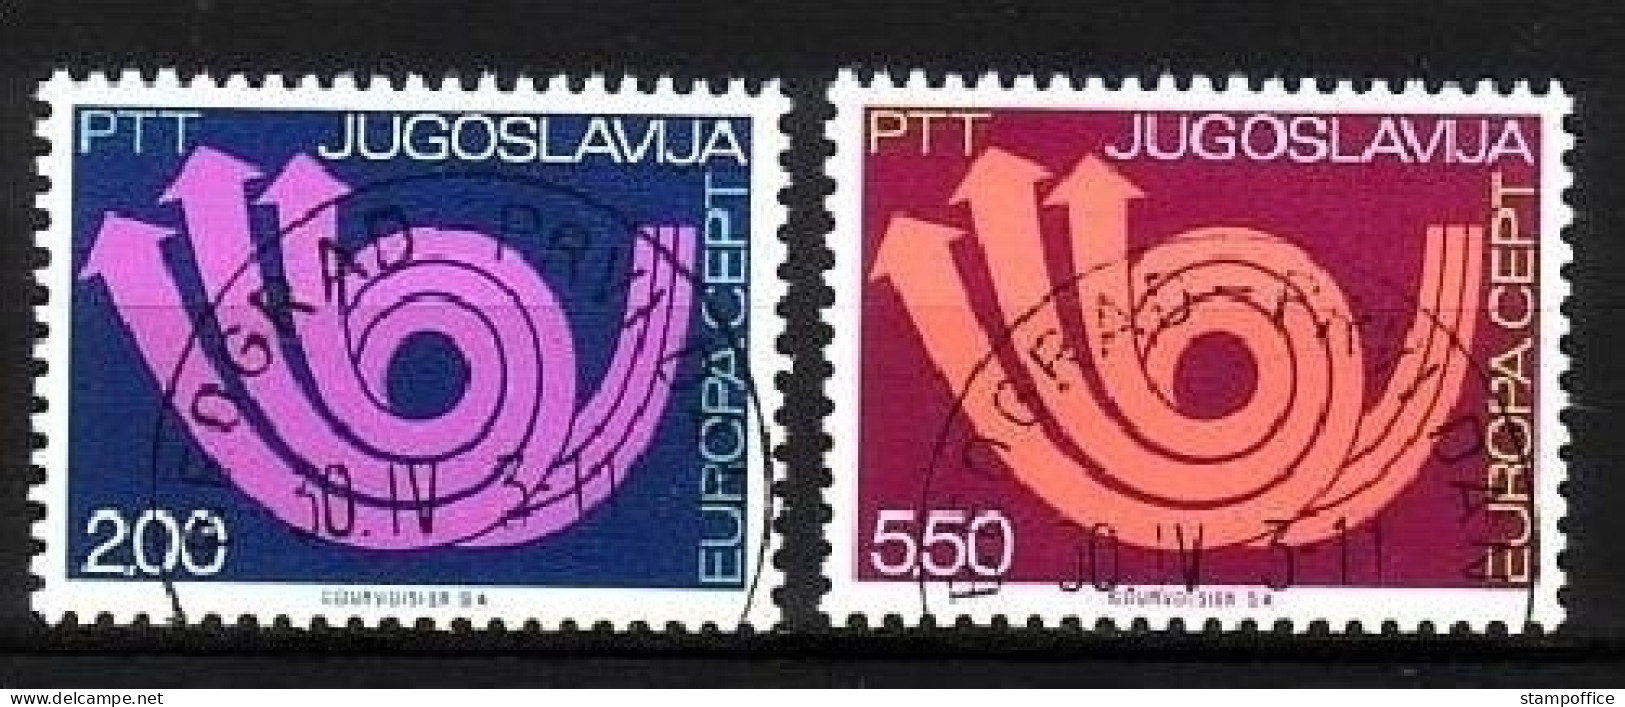 JUGOSLAWIEN MI-NR. 1507-1508 O EUROPA 1973 - POSTHORN - 1973